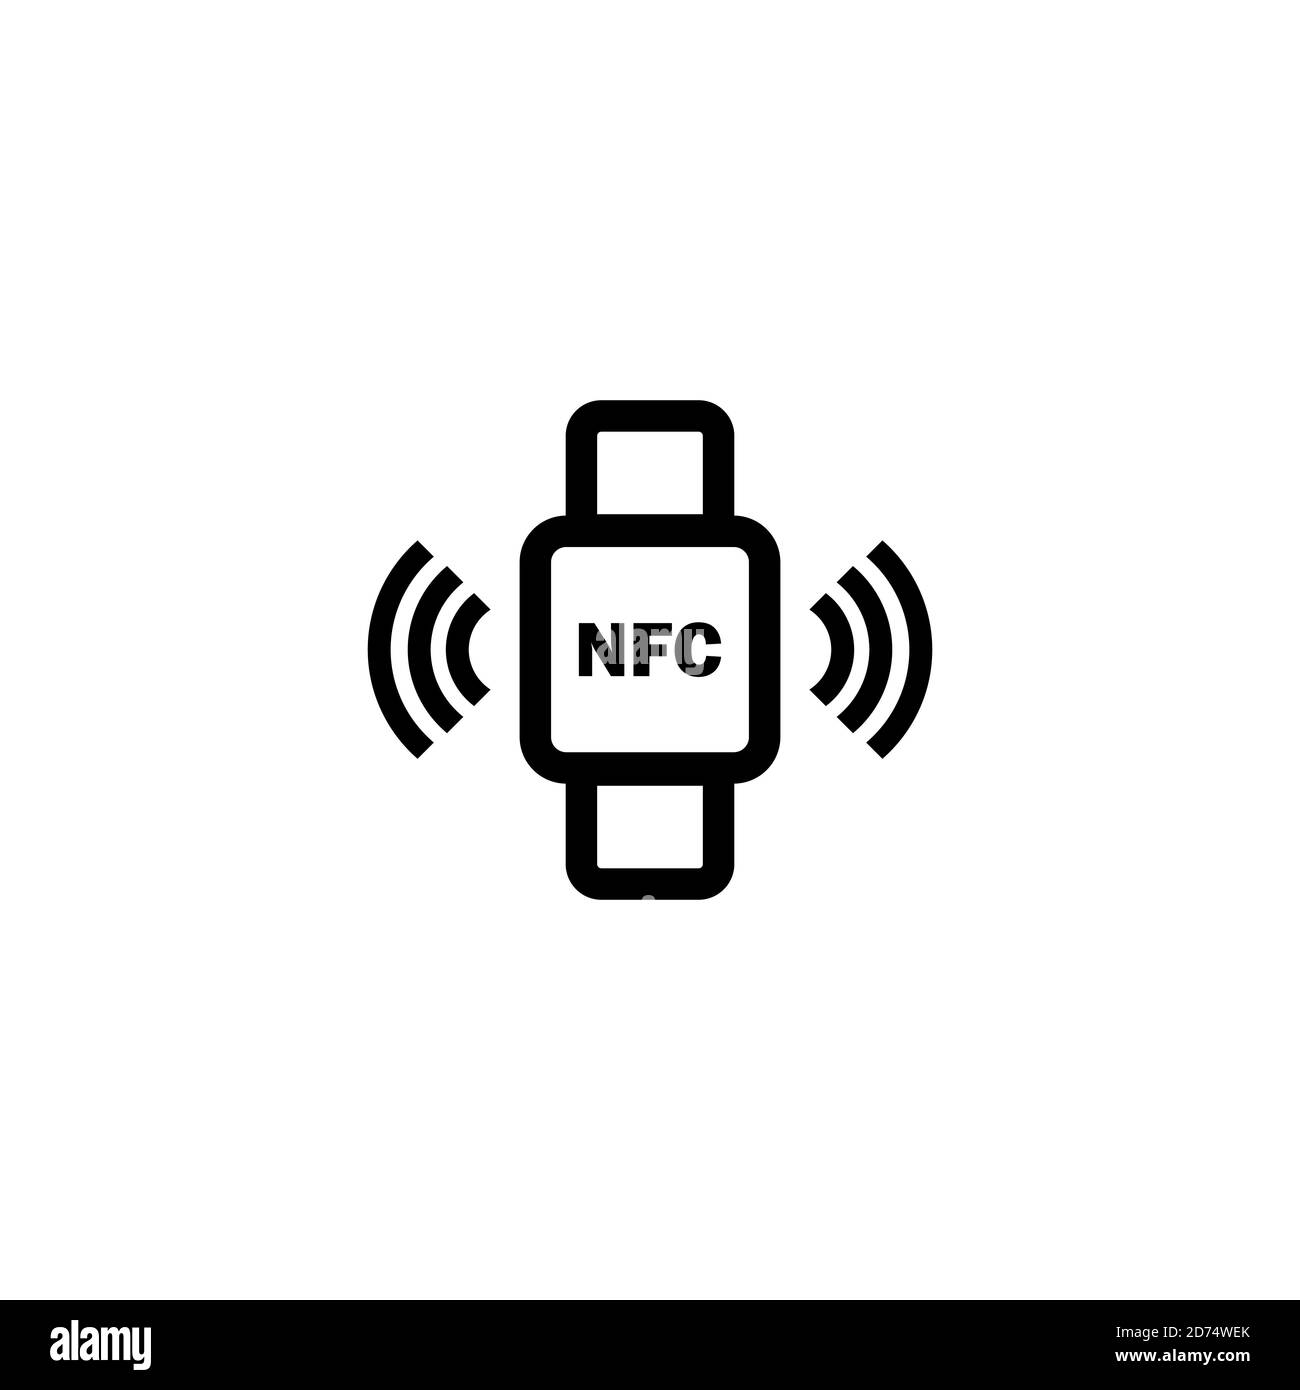 Kontaktloses Bezahlen mit Smart Watches Icon in schwarz. NFC. Vektor auf isoliertem weißem Hintergrund. EPS 10 Stock Vektor